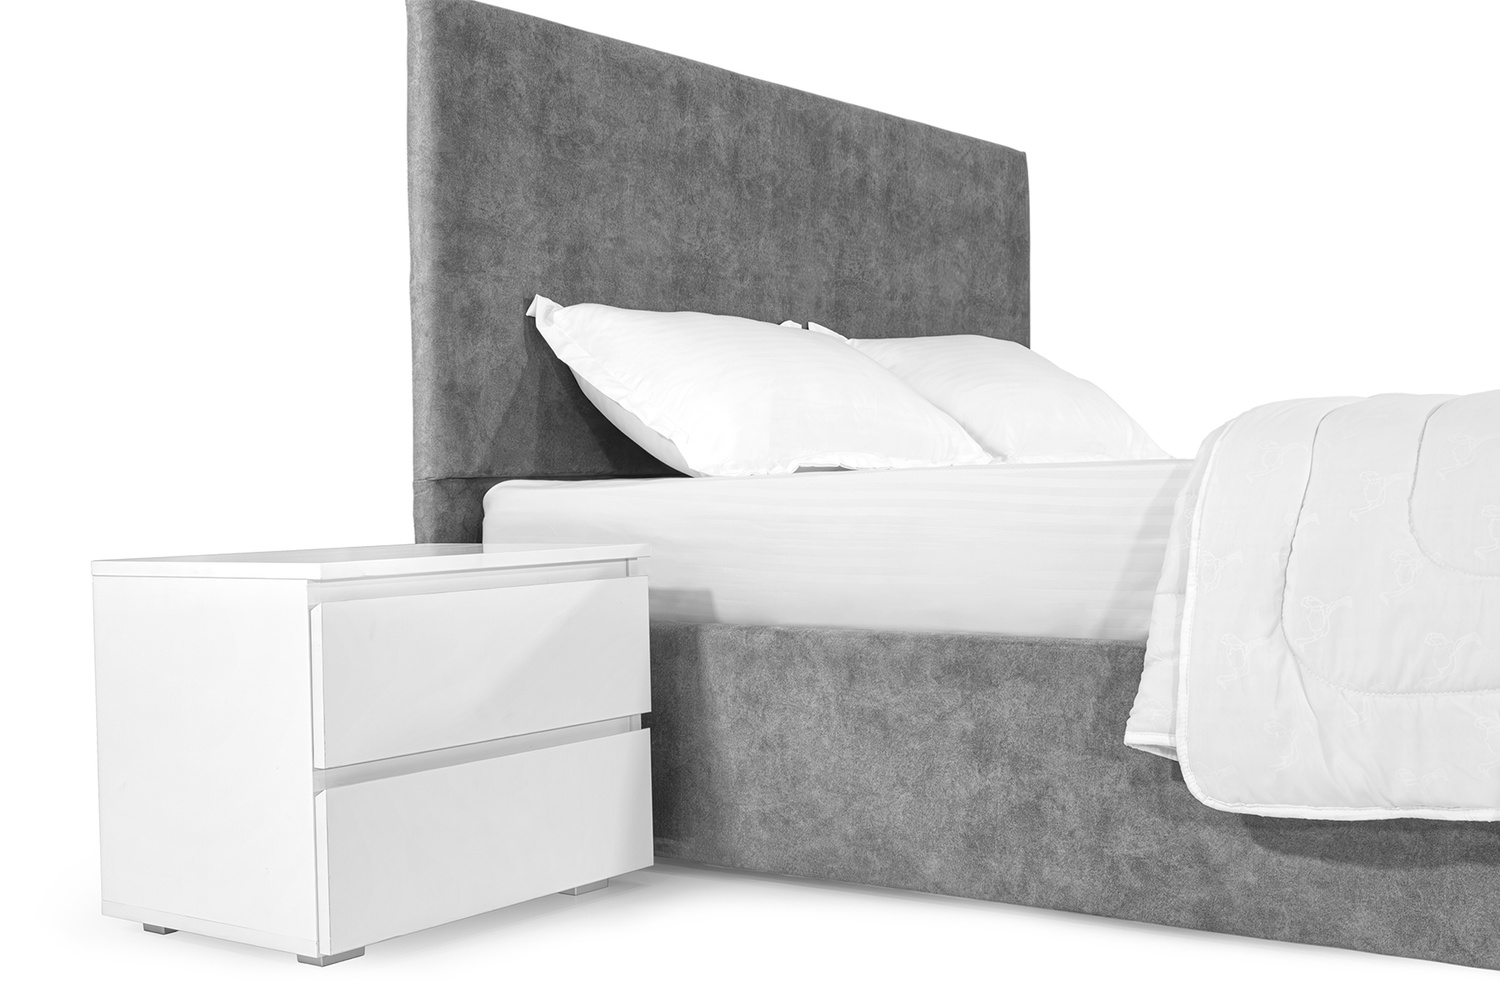 Ліжко Лаванда 140х200 (Світло-сірий, ламелі, без підйомного механізму) IMI lvnd140x200ssb фото